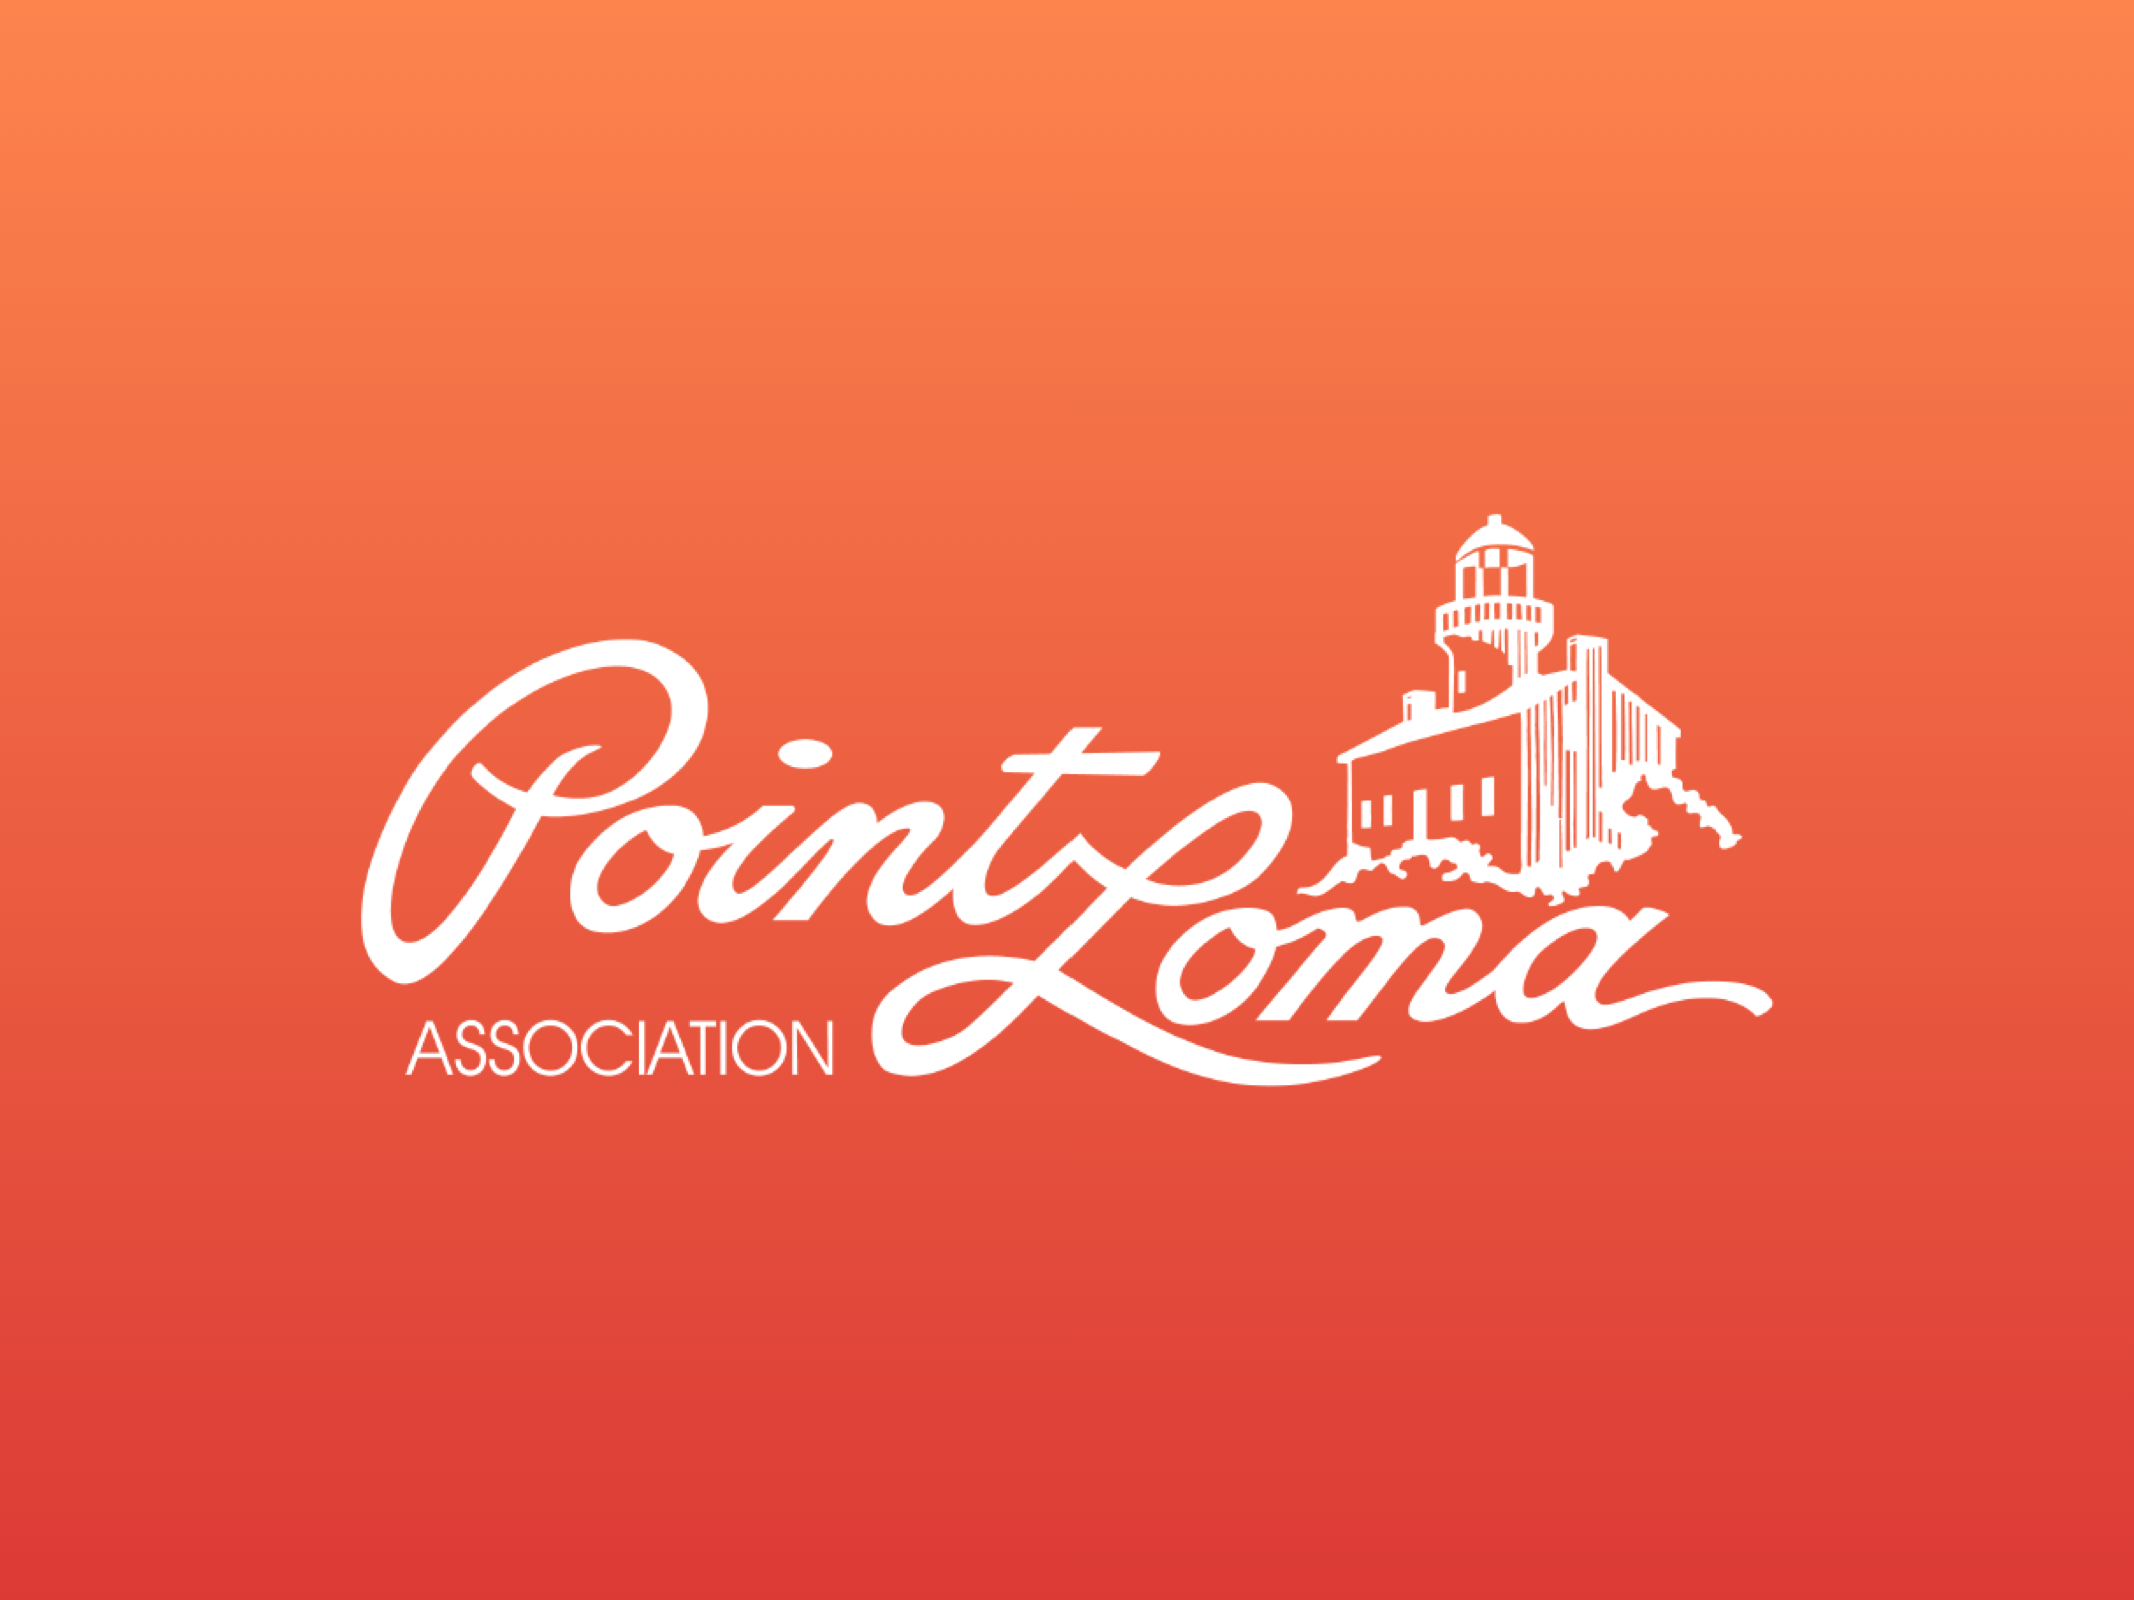 Volunteer — Point Loma Association